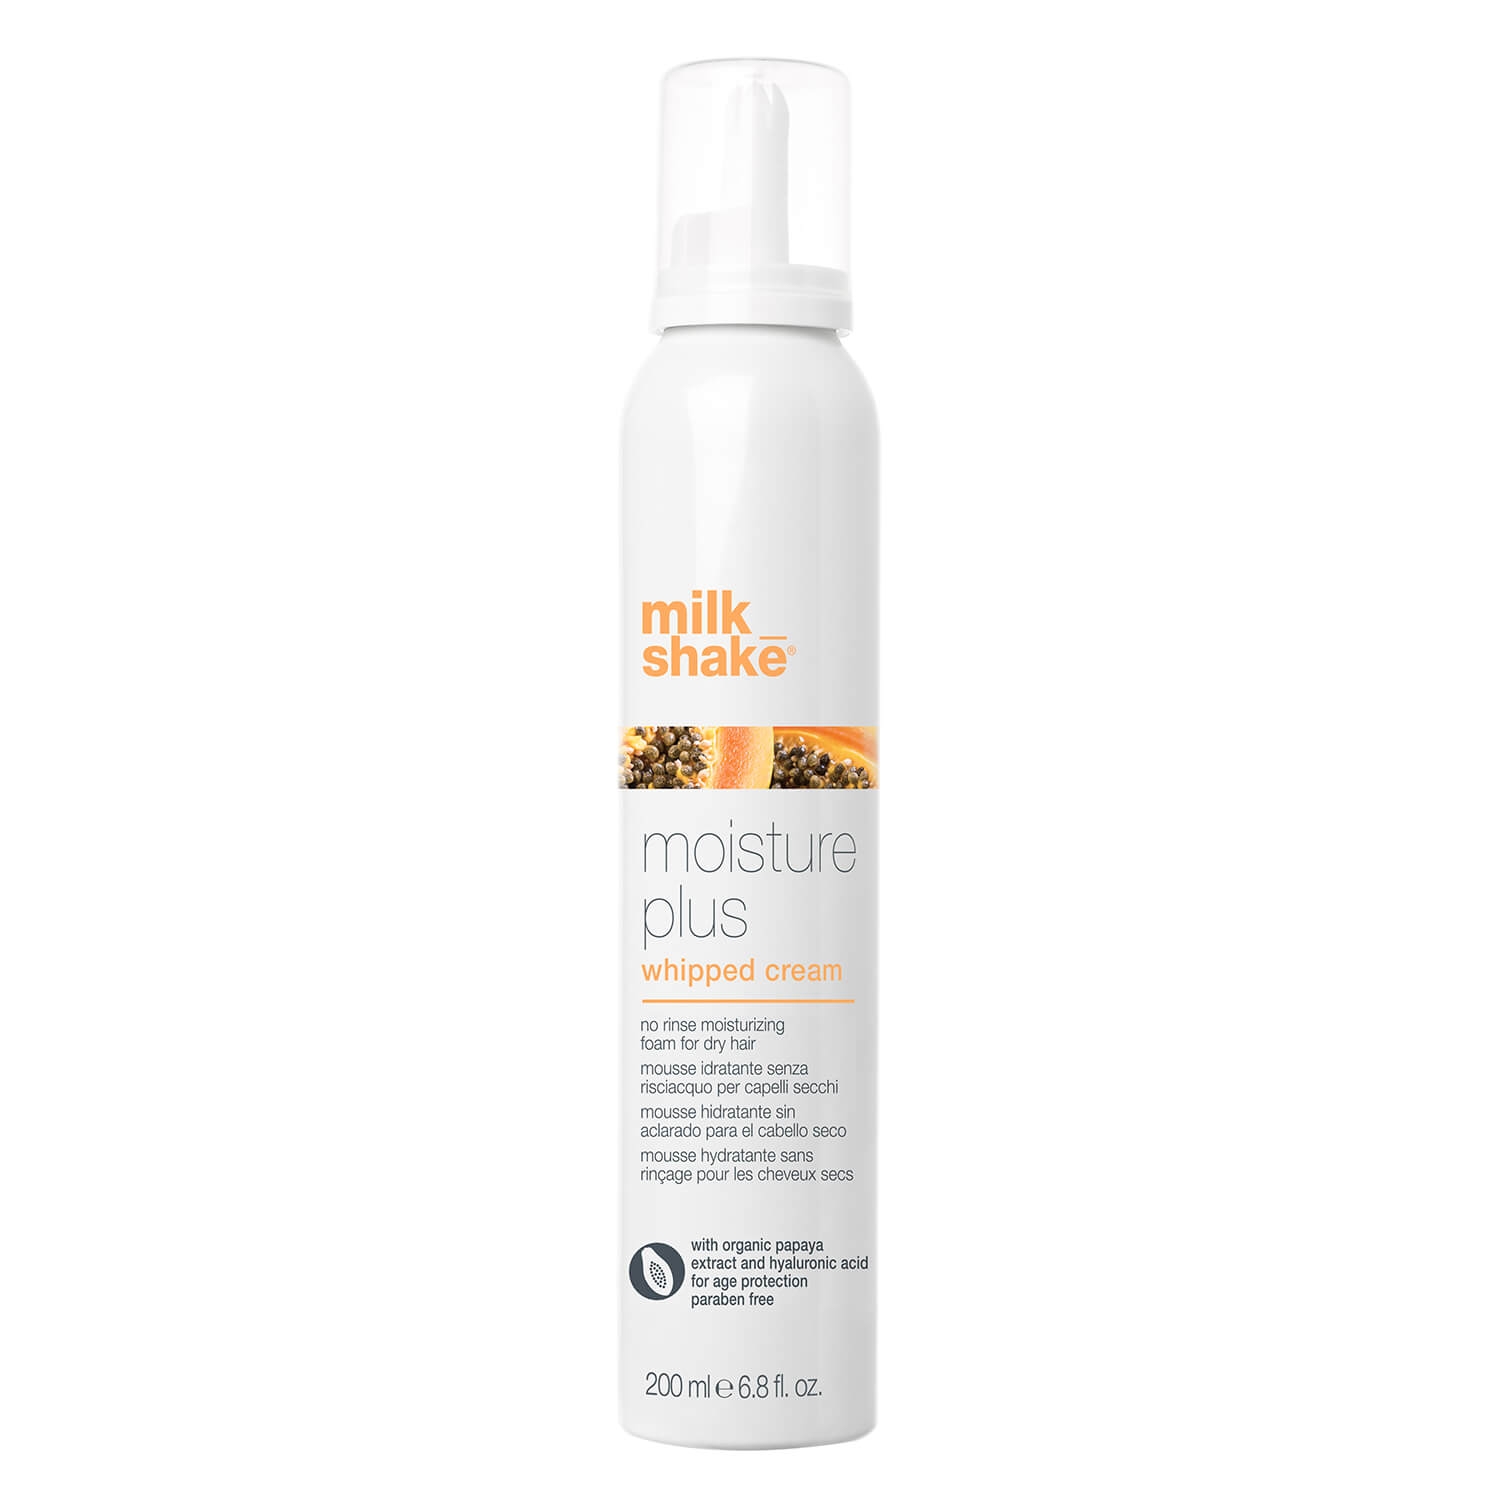 Produktbild von milk_shake moisture plus - whipped cream